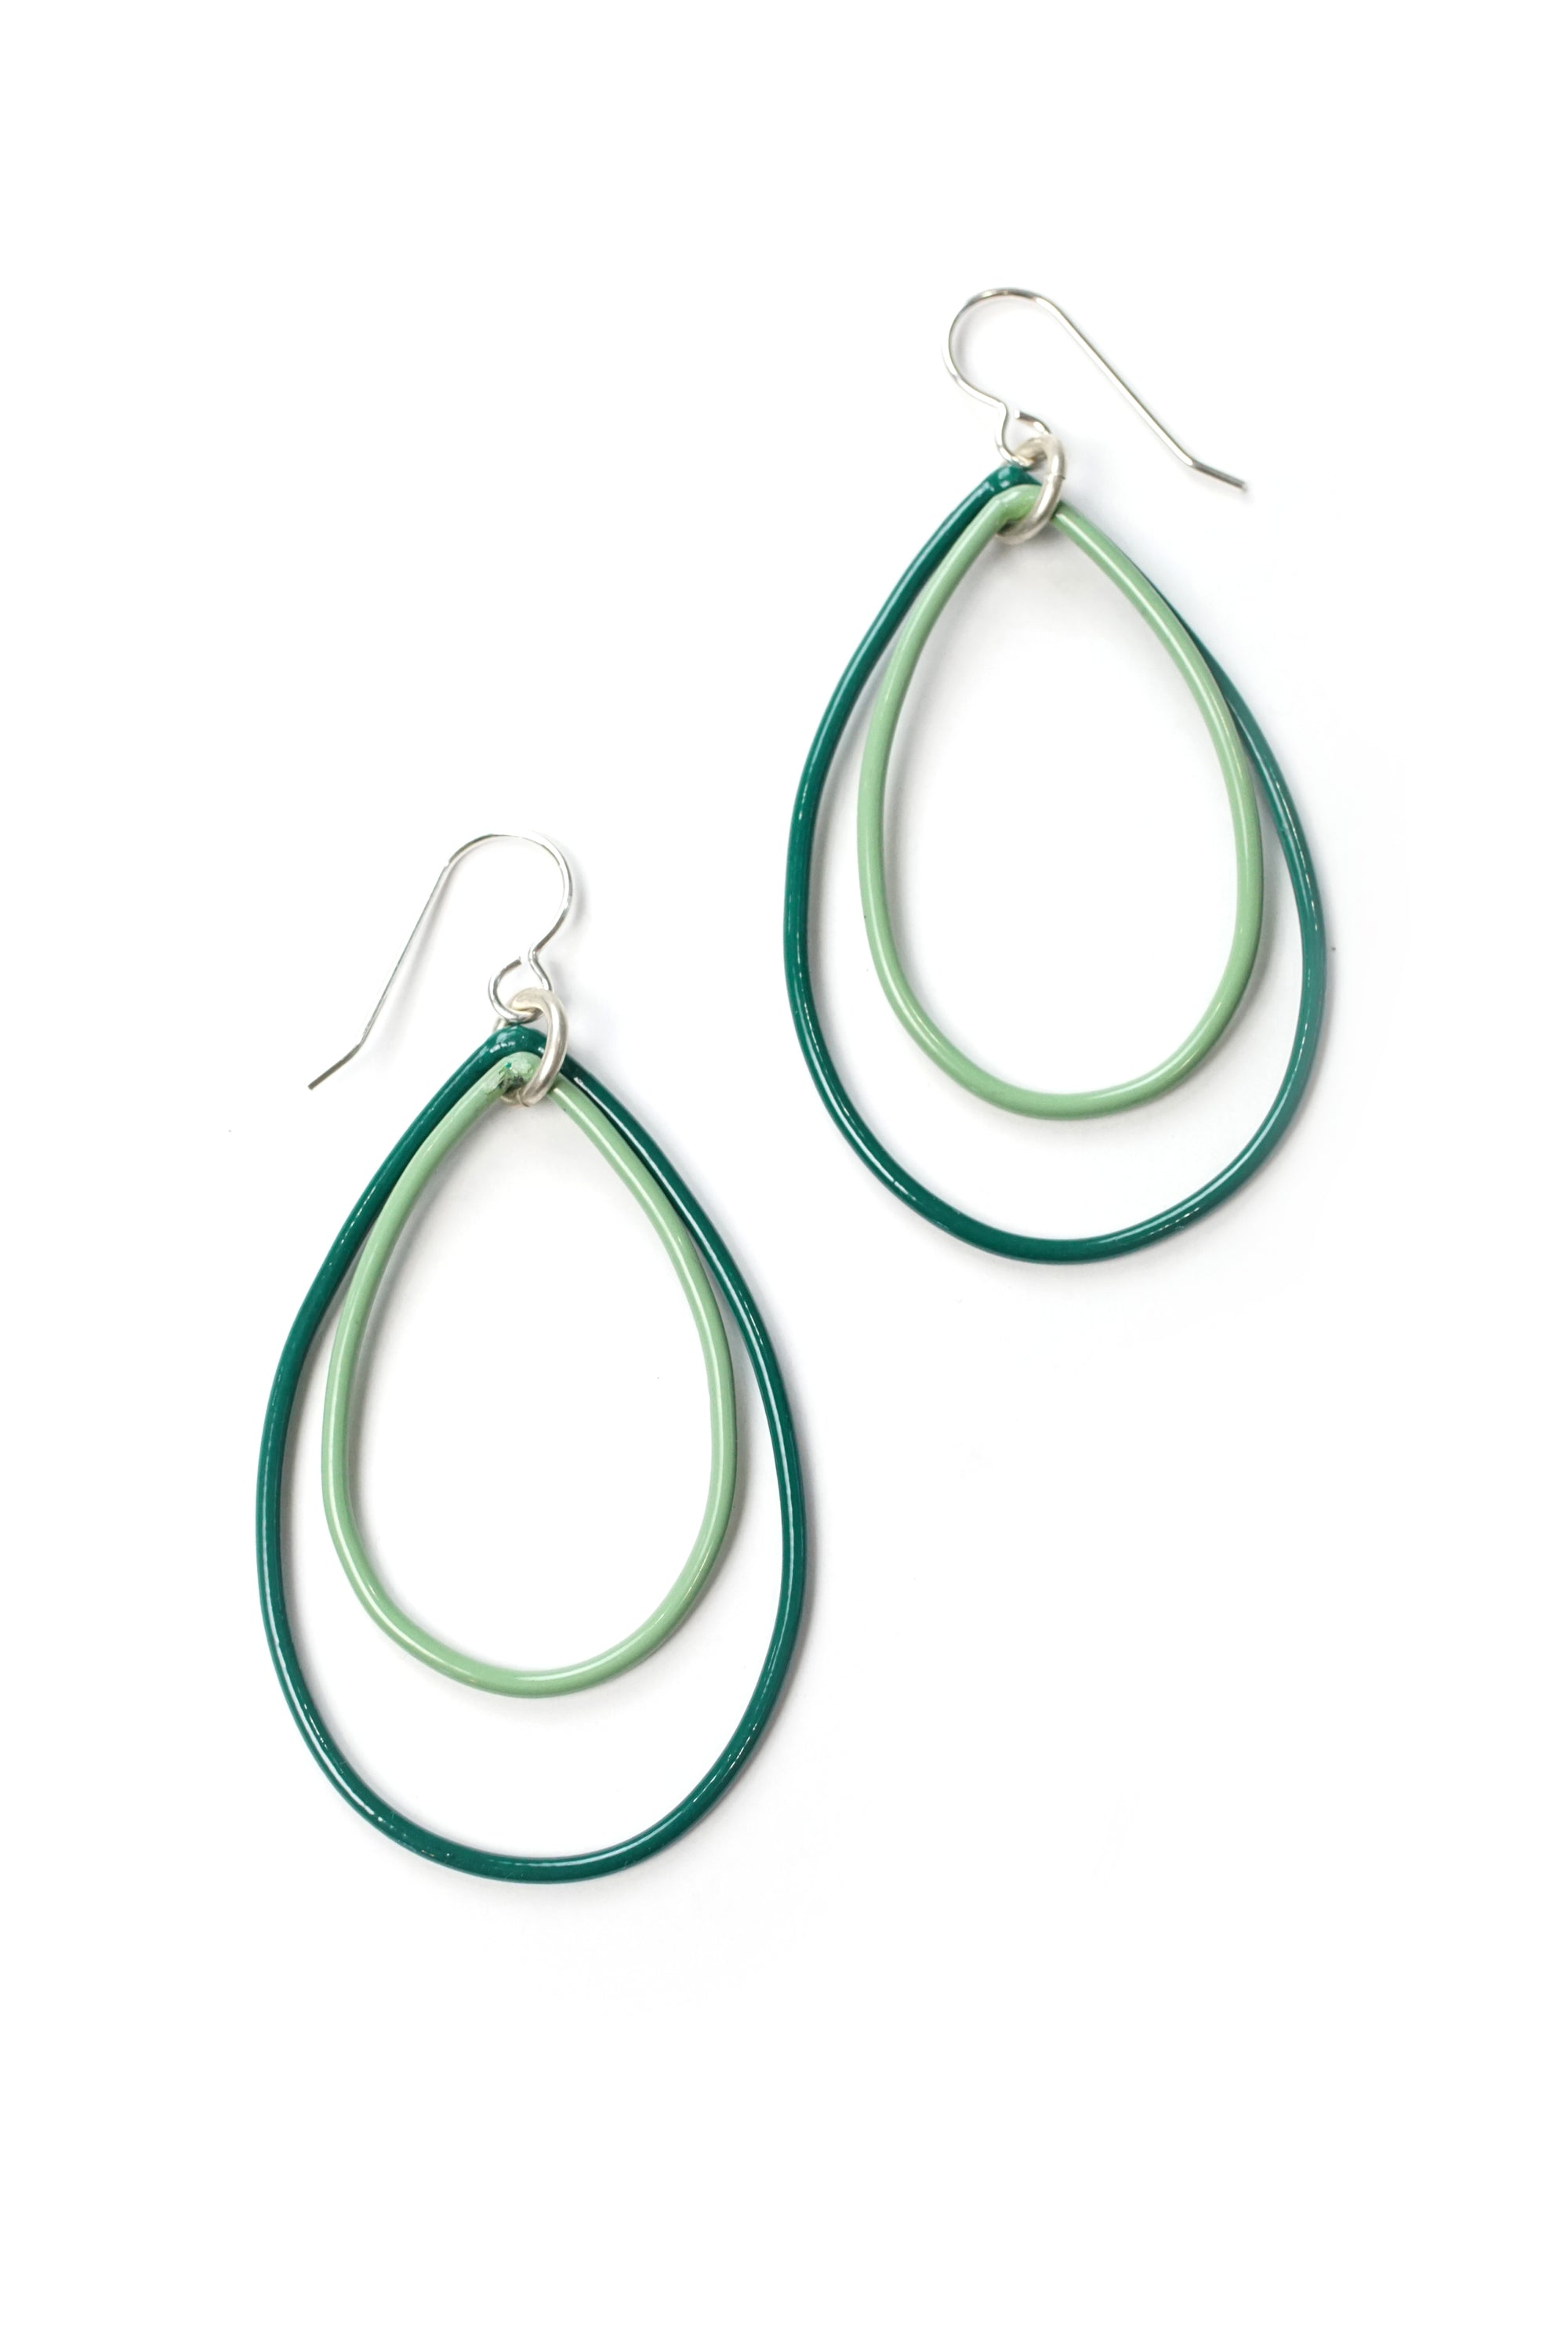 Rachel earrings in Emerald Green and Pale Green